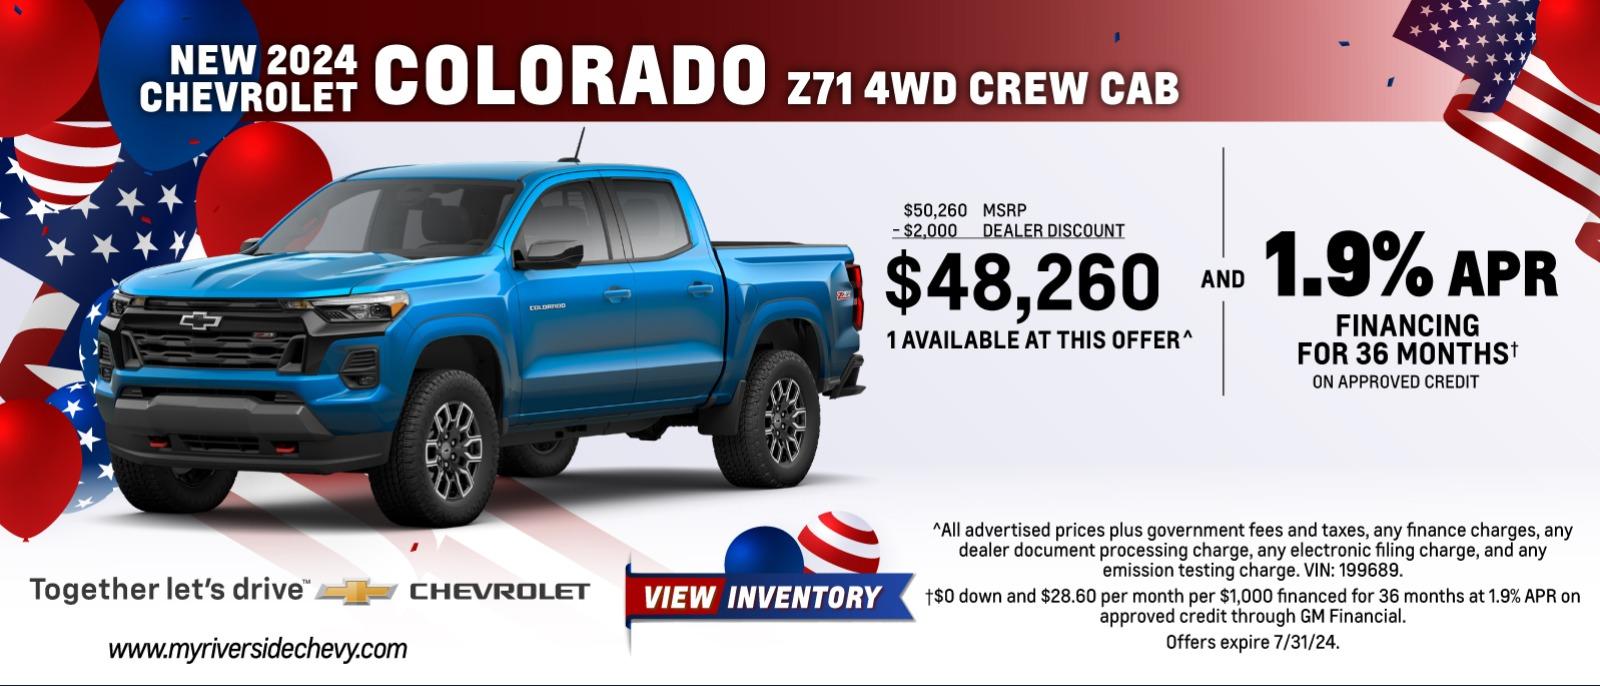 New 2024 Chevy Colorado